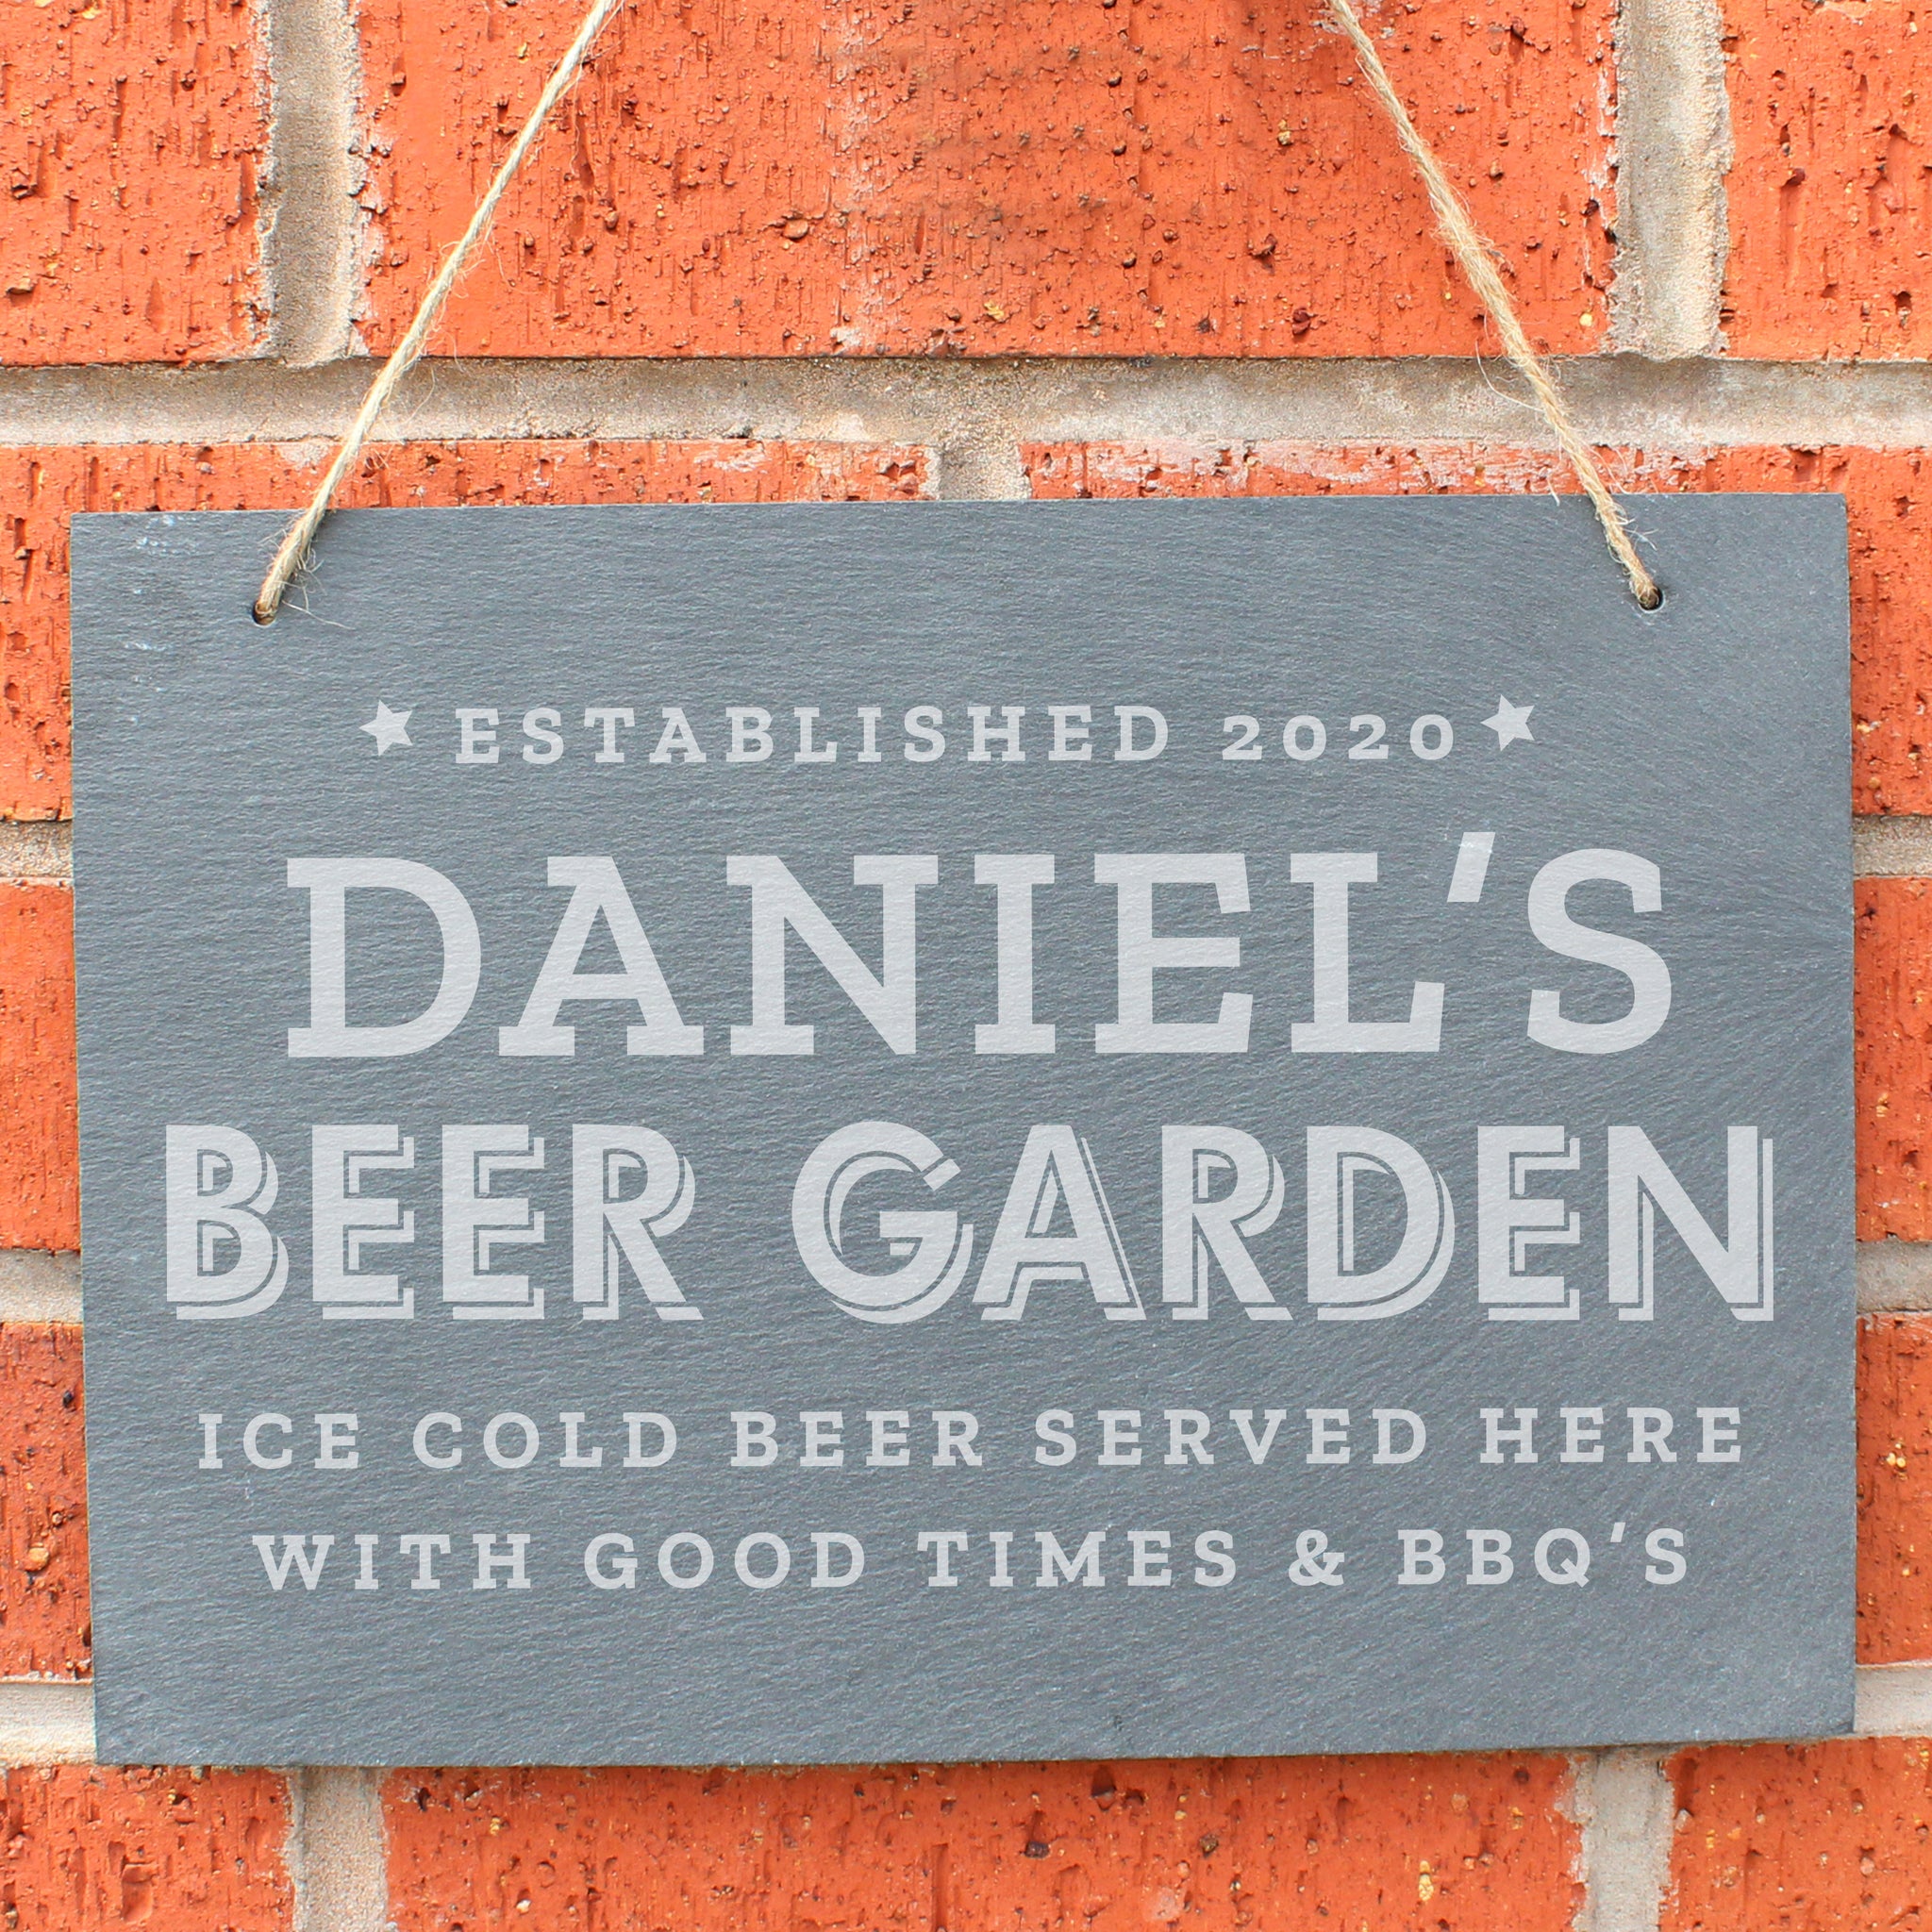 Personalised Beer Garden Sign